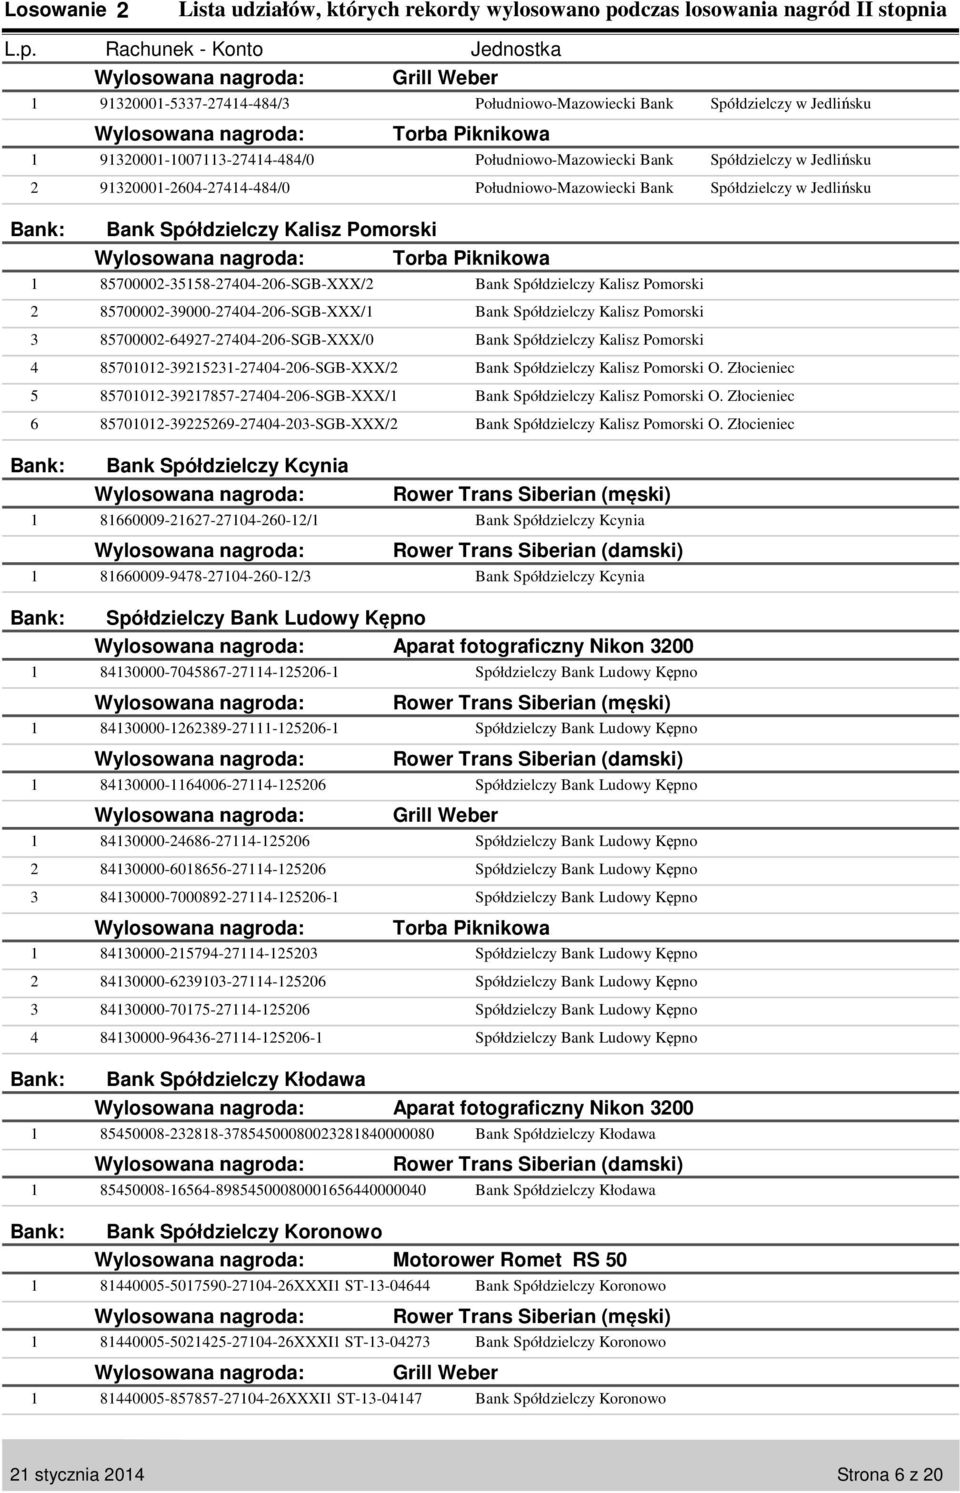 Loteria promocyjna. Lista udziałów, których rekordy wylosowano podczas losowania I stopnia PDF Darmowe